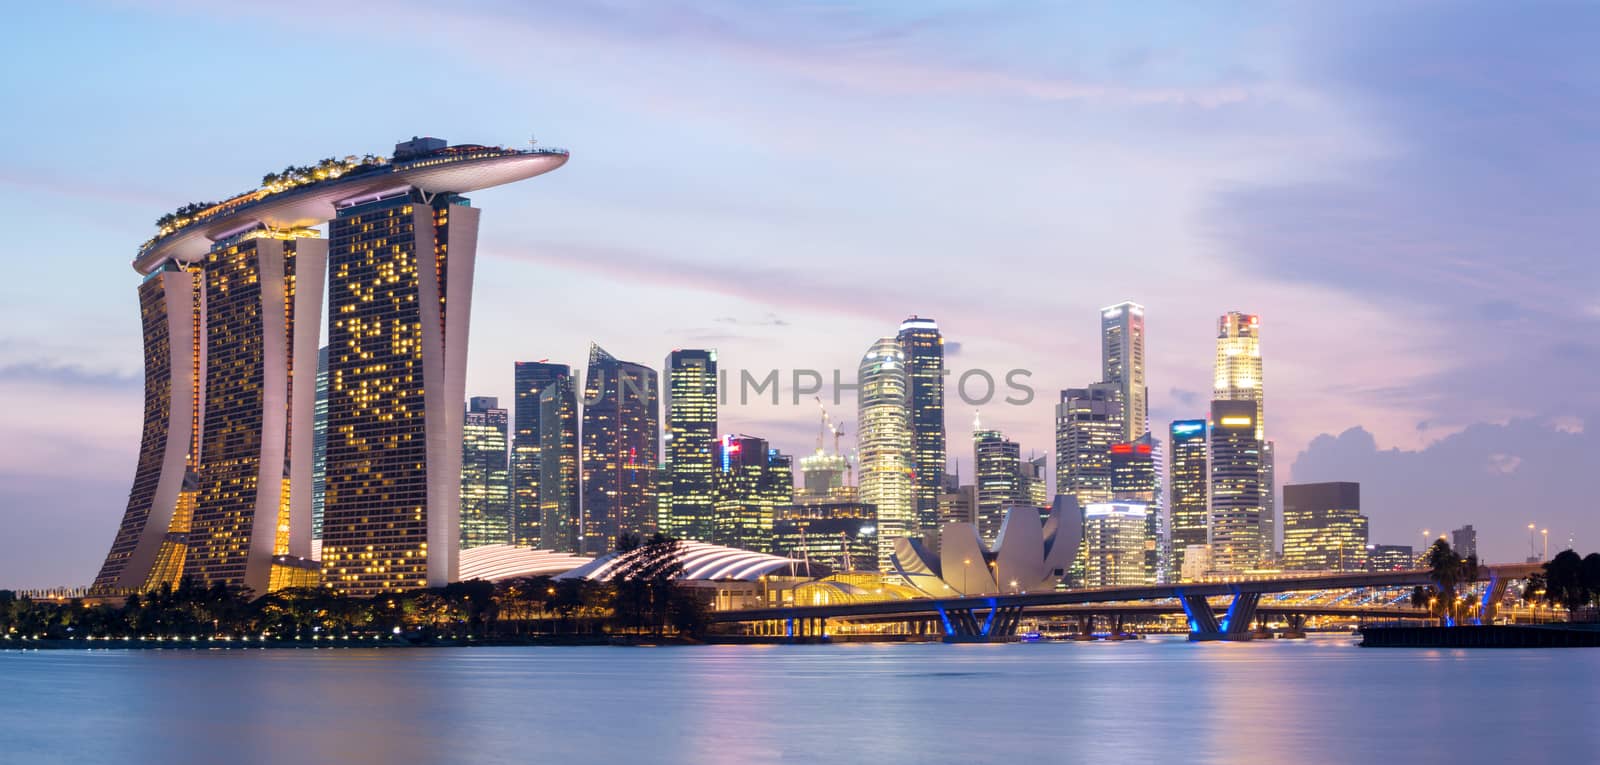 Singapore Panorama by vichie81